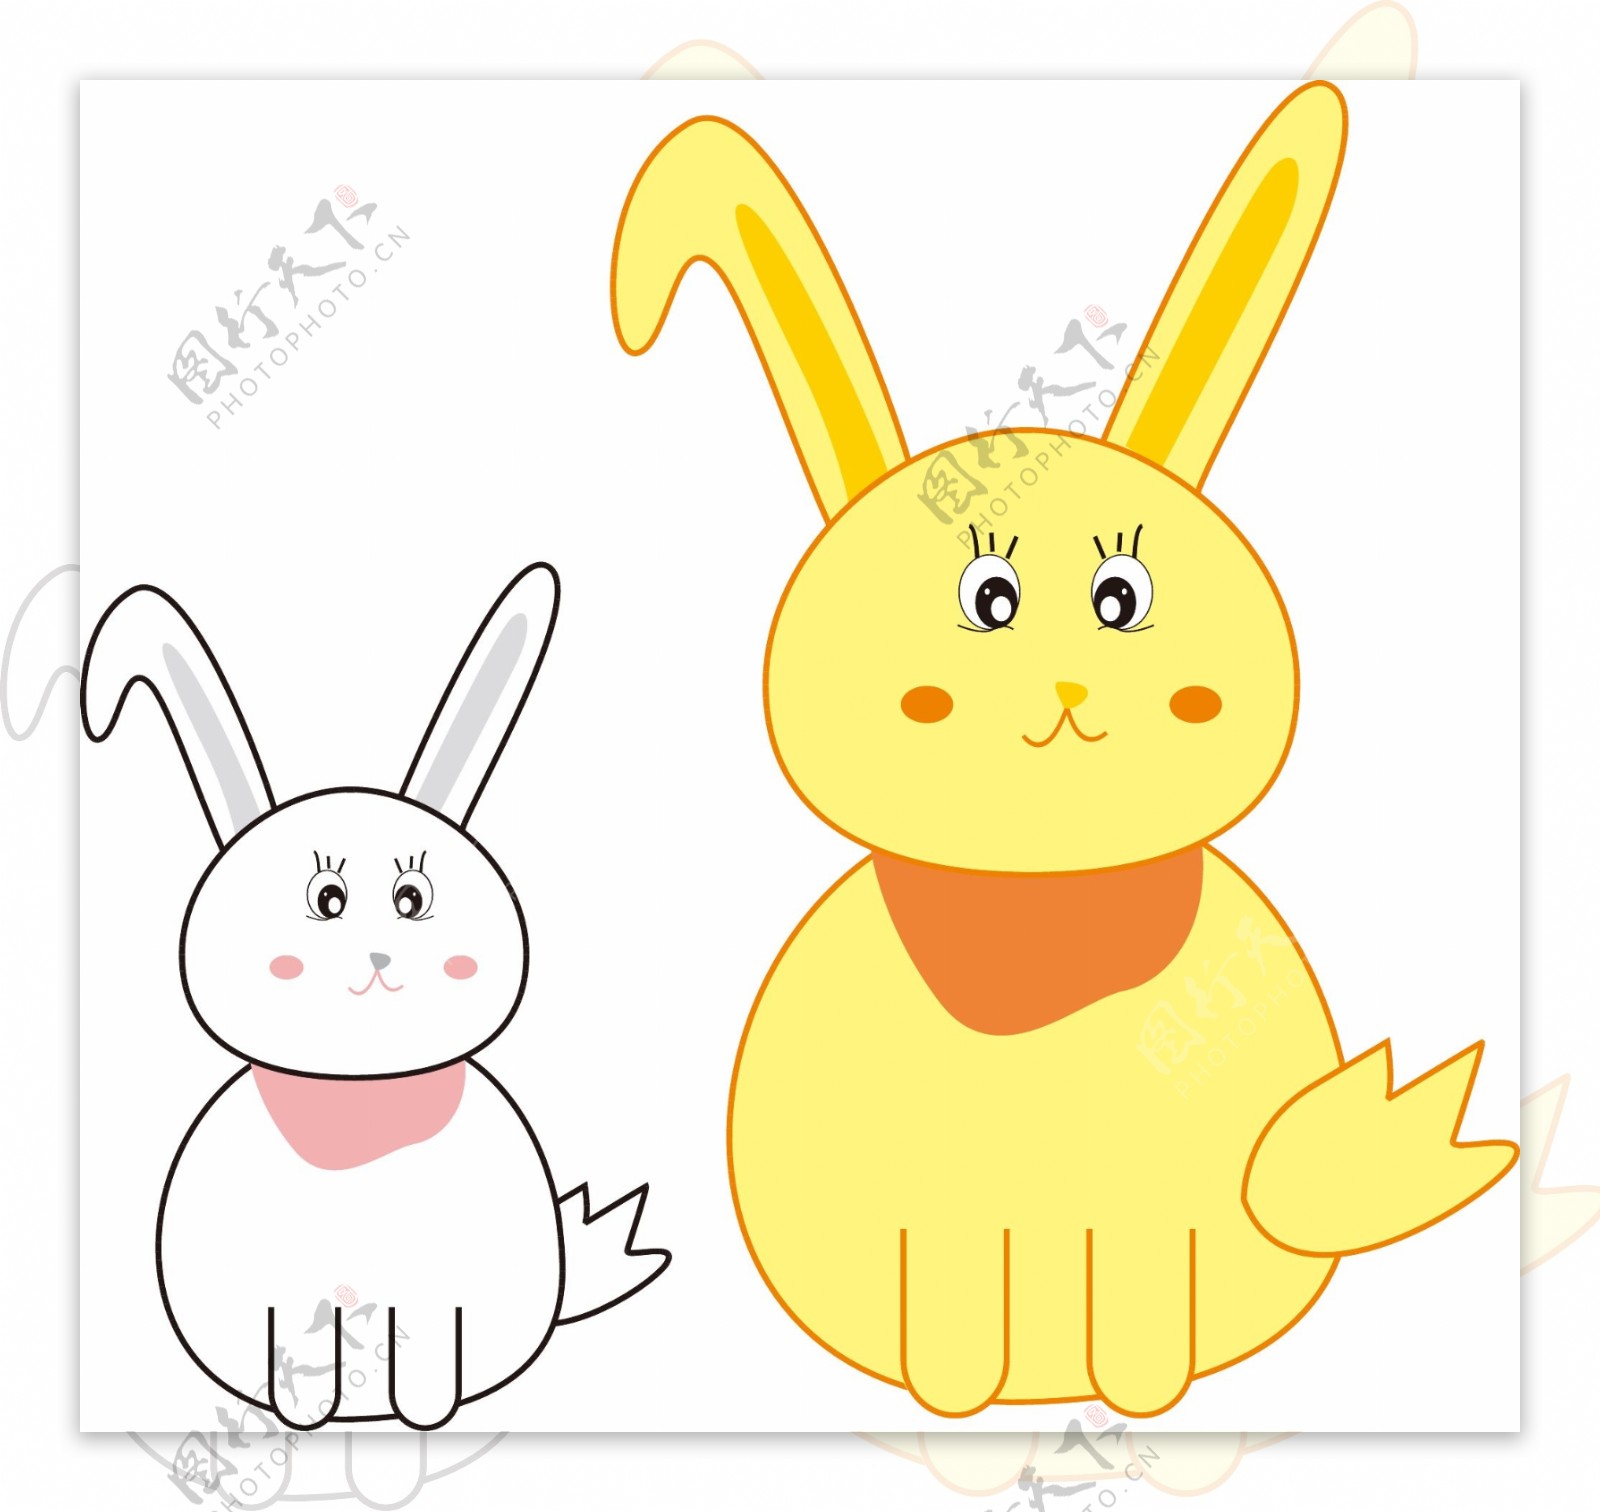 矢量白色兔子和黄色兔子